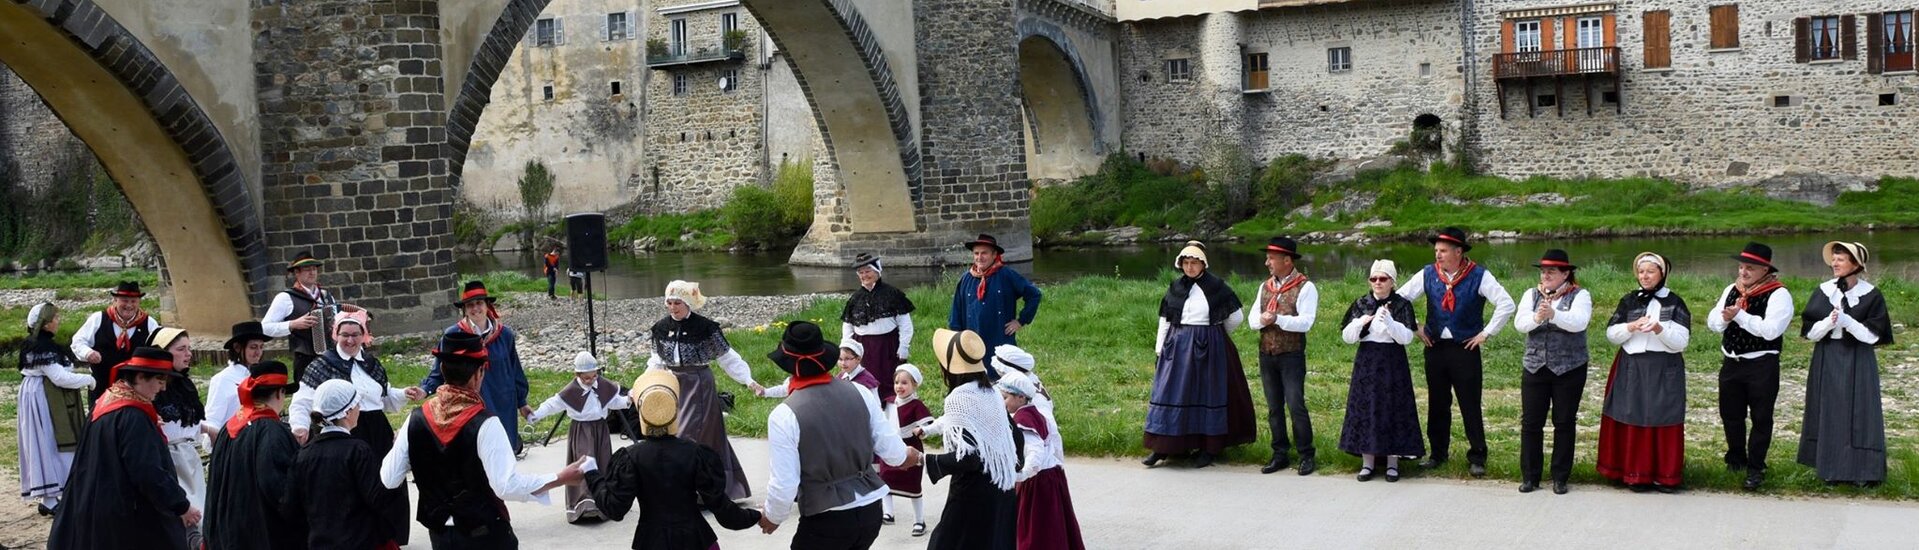 Lavoûte-chilhac, candidat au titre de plus beau village de France, tourisme haut Allier